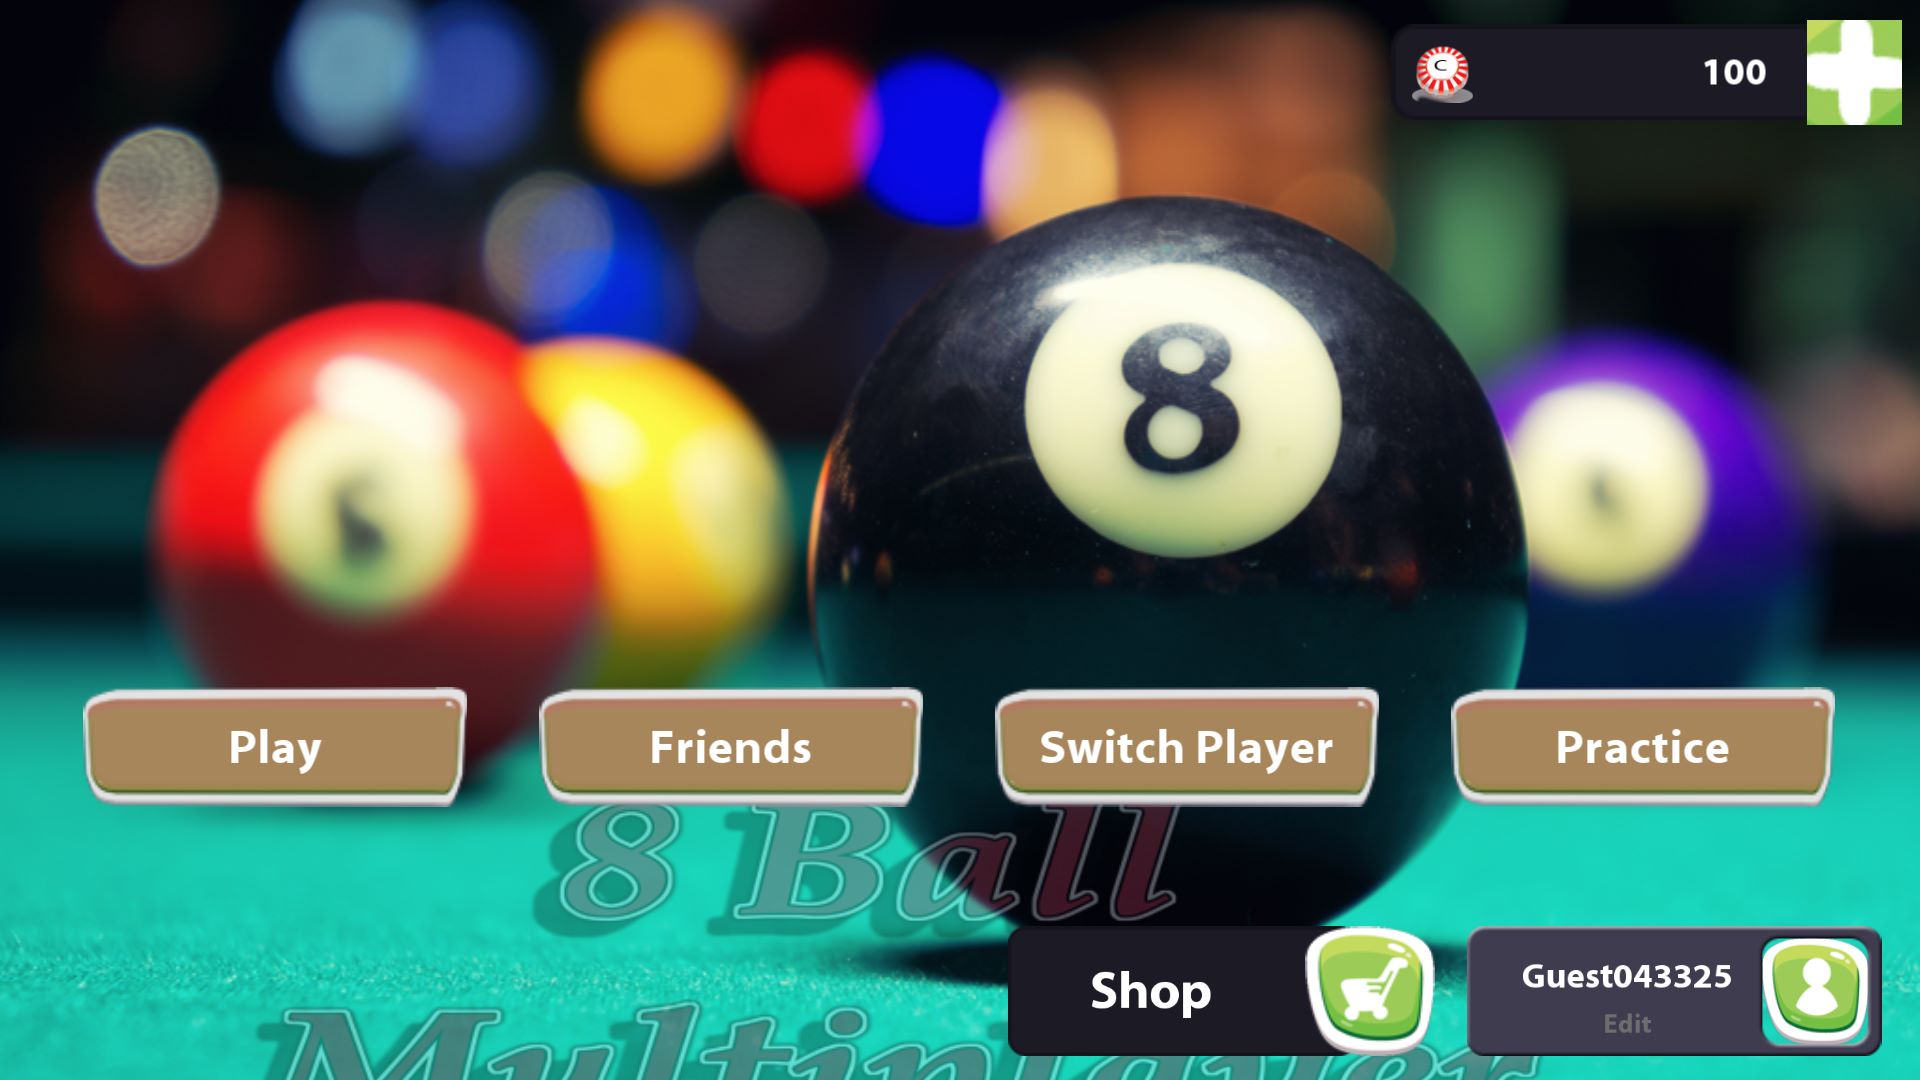 Buy Pool_Game - Microsoft Store en-WS